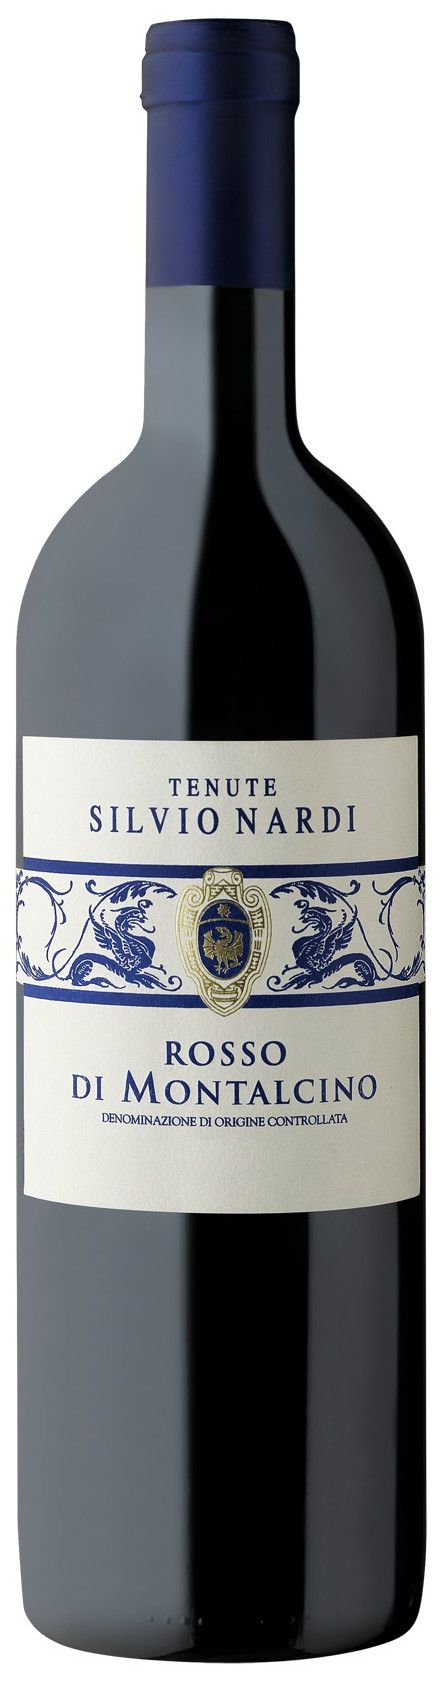 Tenute Silvio Nardi, Rosso Di Montalcino, 2006